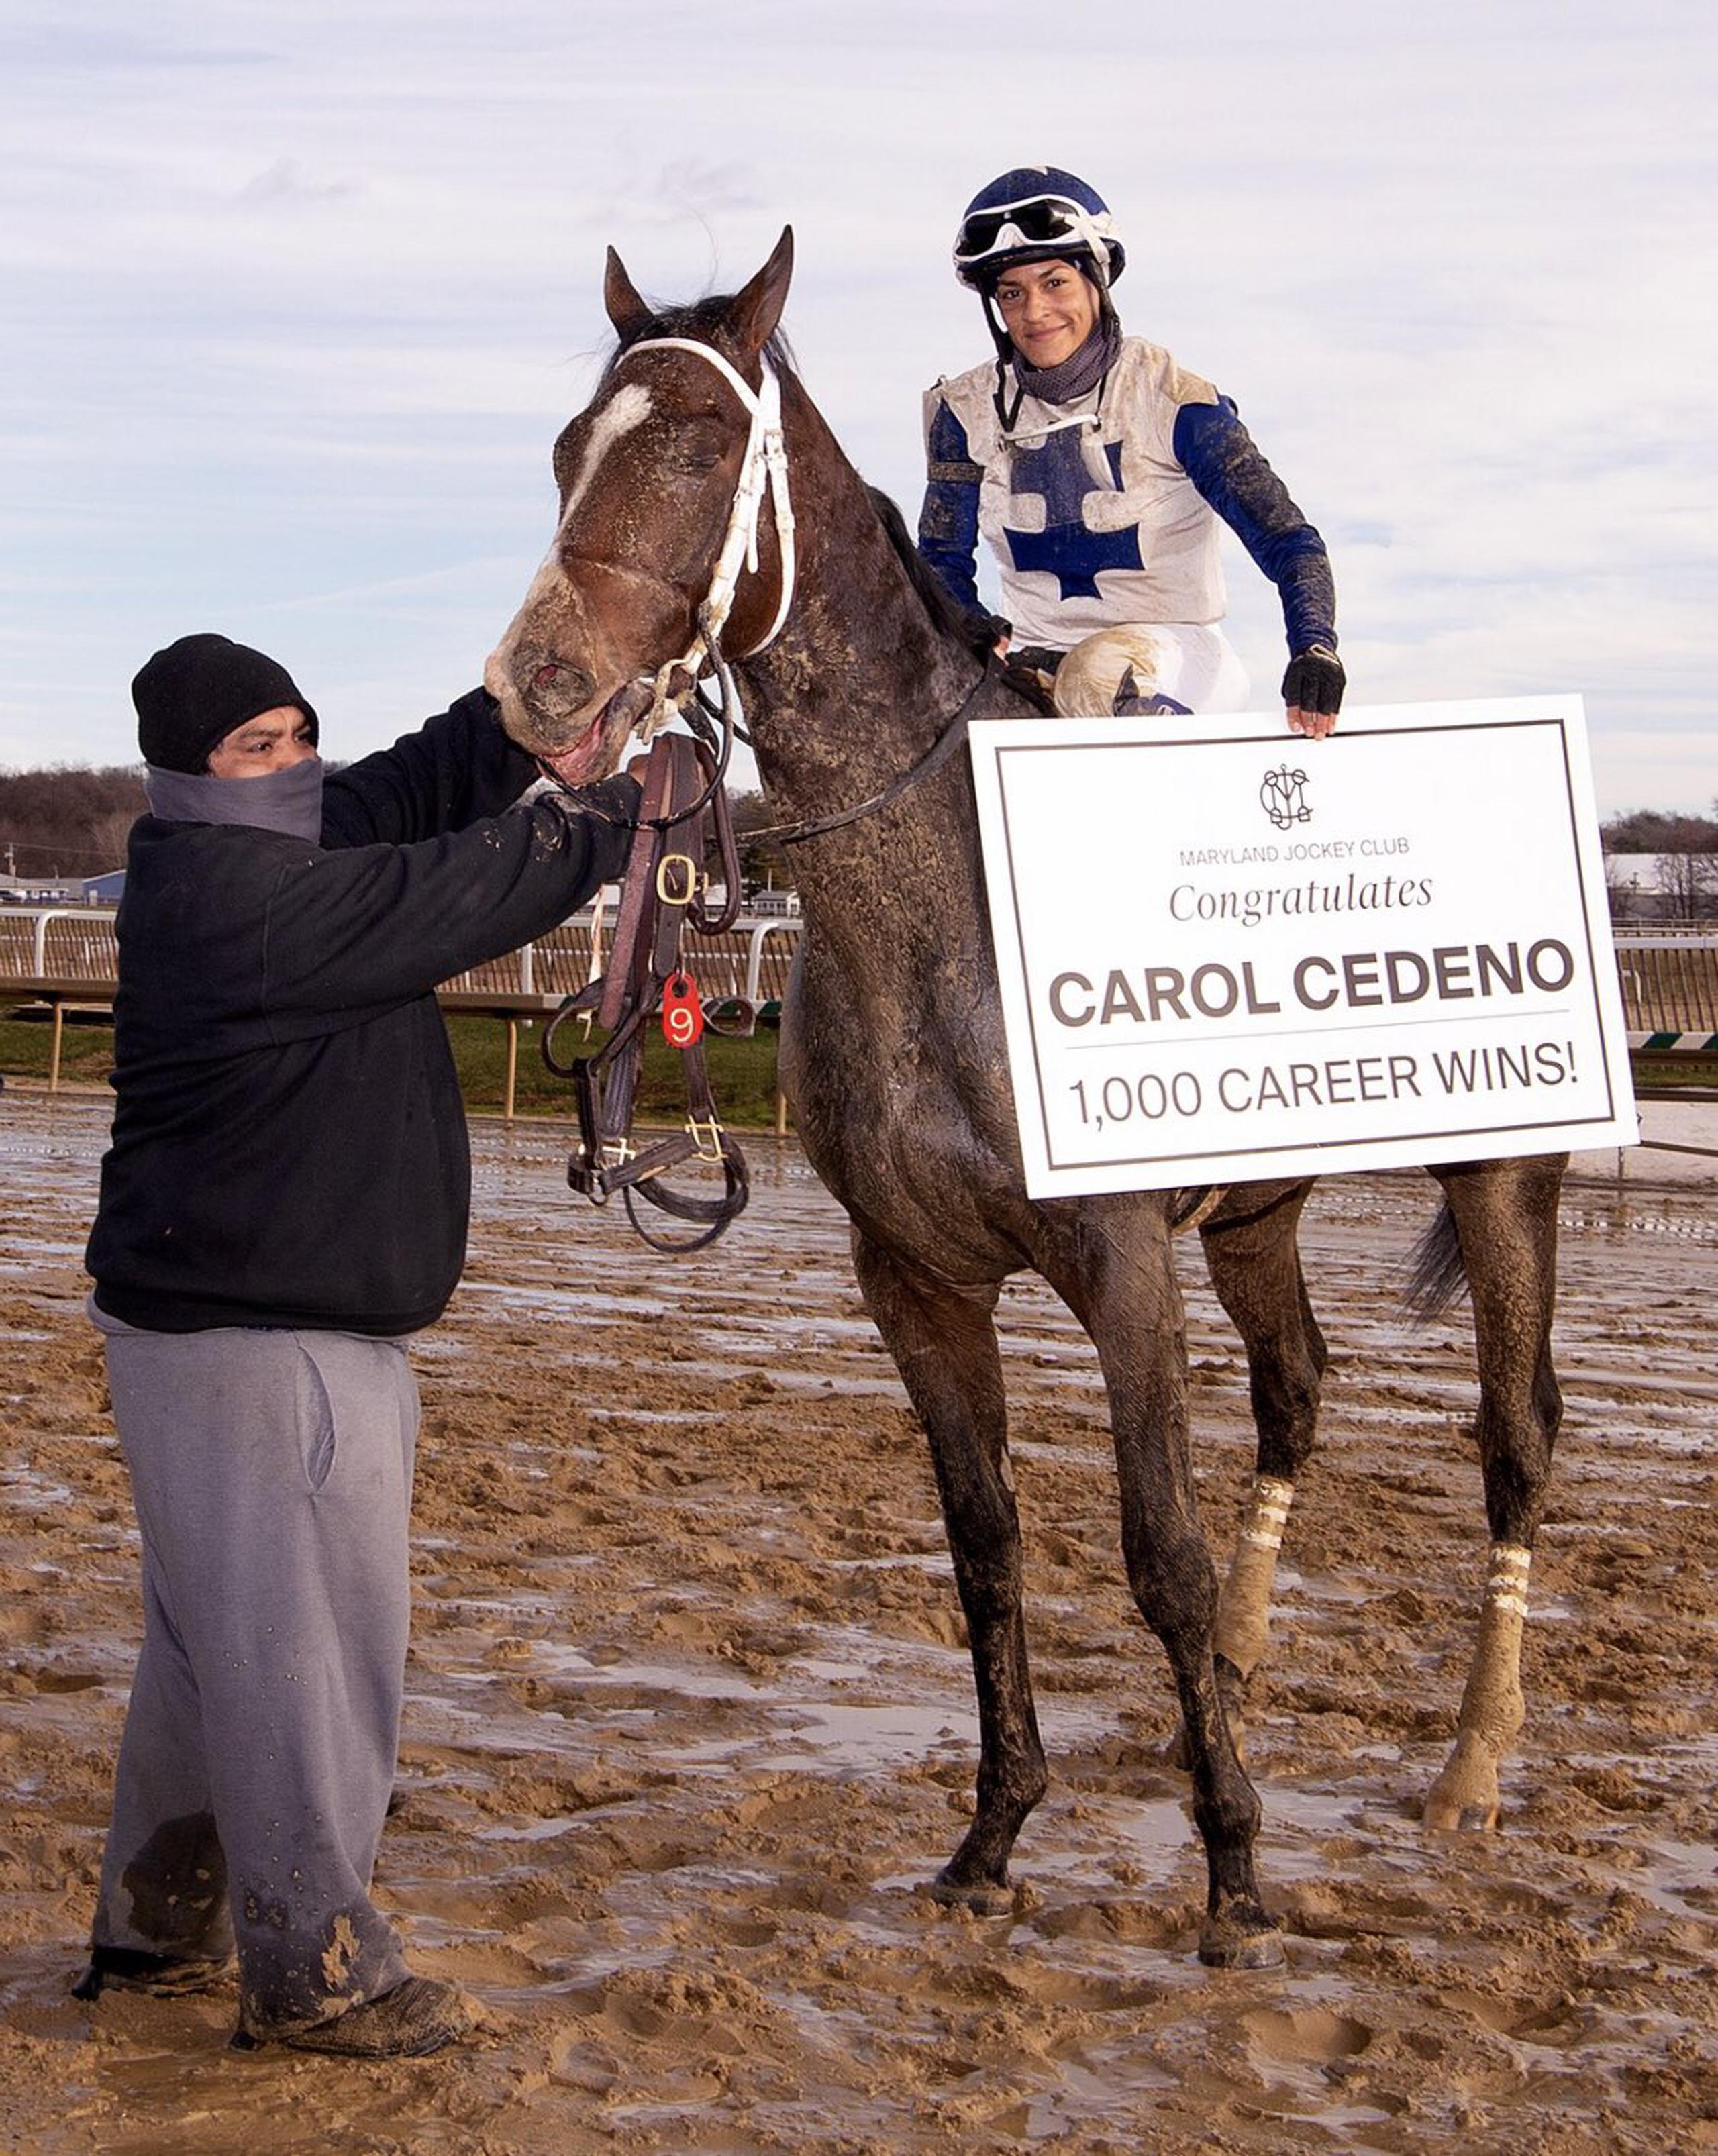 Carol Cedeño viene de registrar su victoria número 1,000 en su carrera en Maryland.